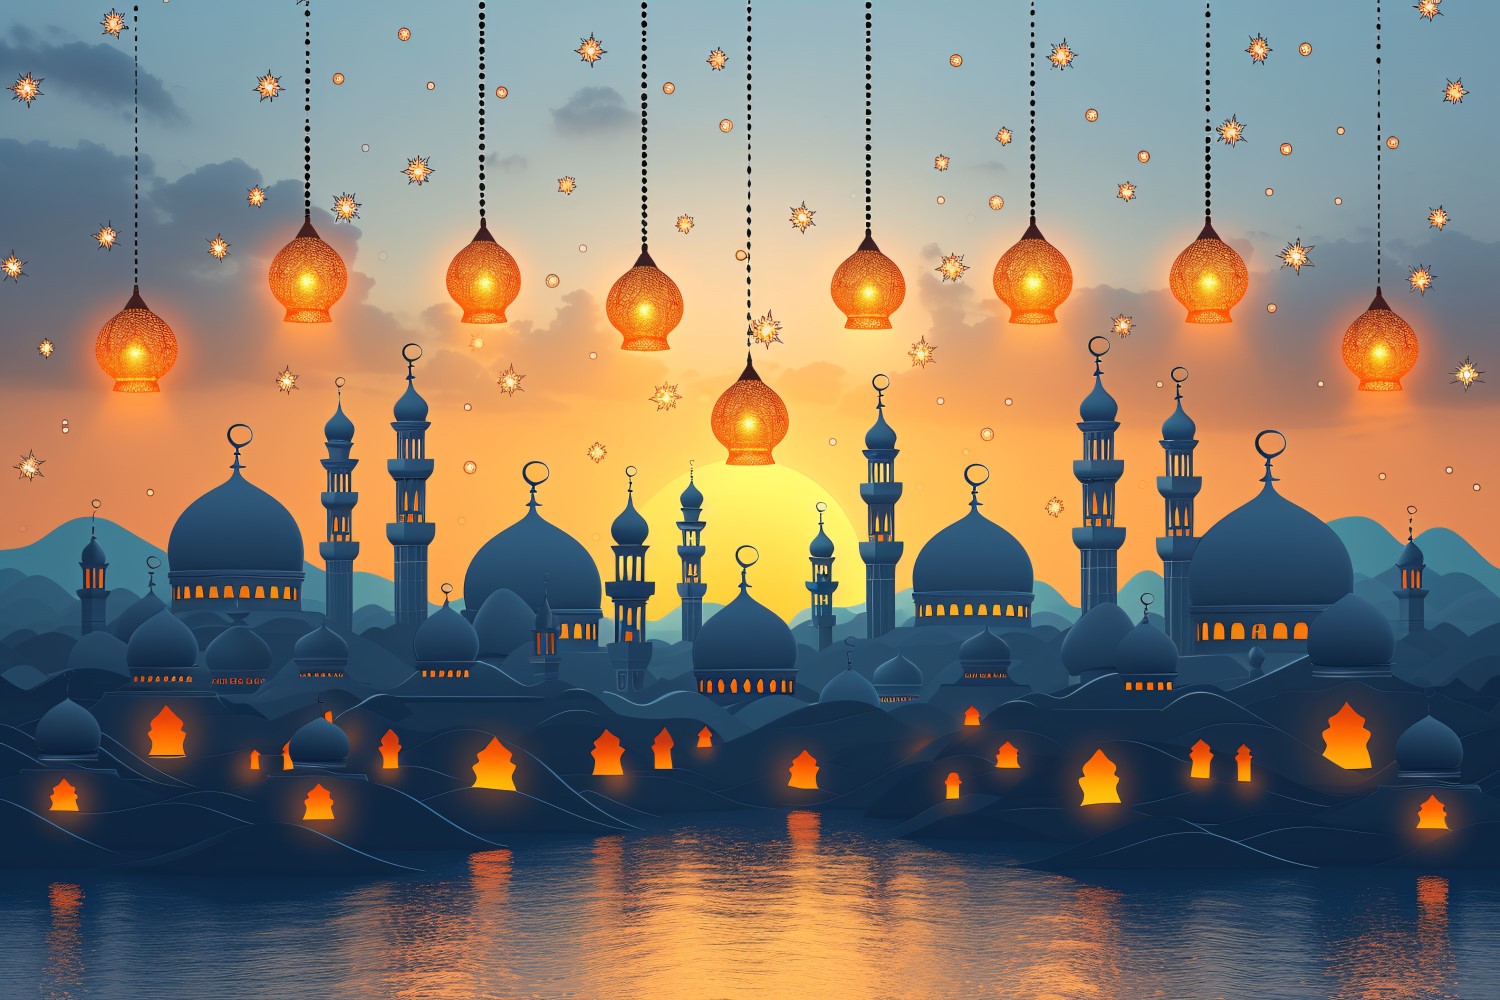 Ramadan Kareem greeting card banner poster design with lantern & mosque 02